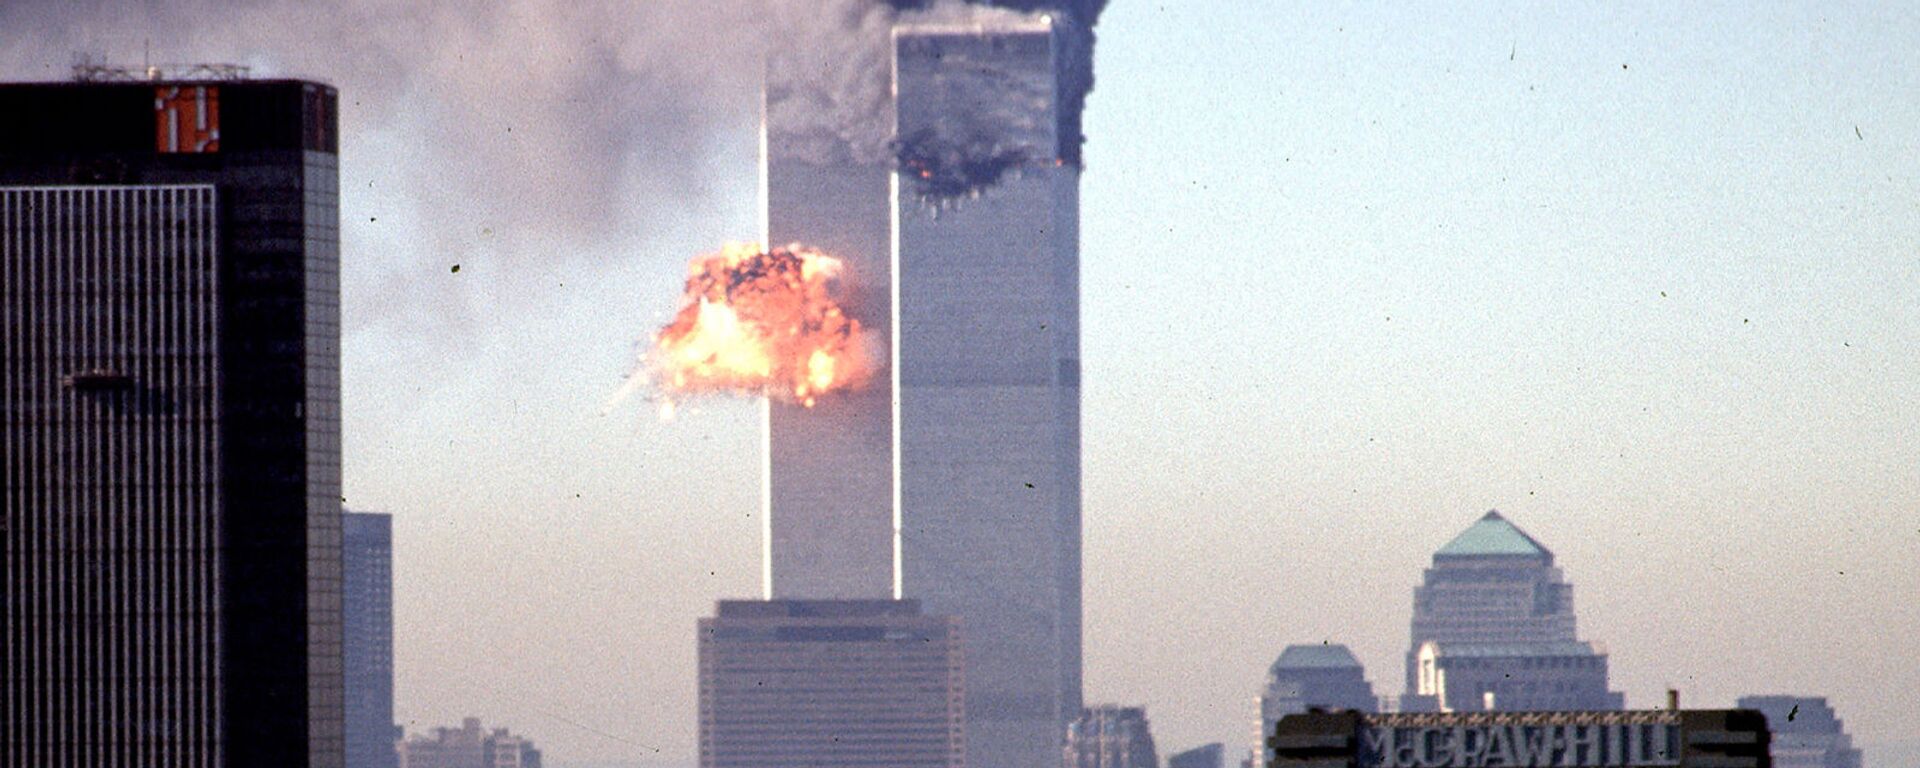 Всемирный торговый центр во время взрыва (11 сентября 2001. Нью-Йорк - Sputnik Армения, 1920, 11.09.2021